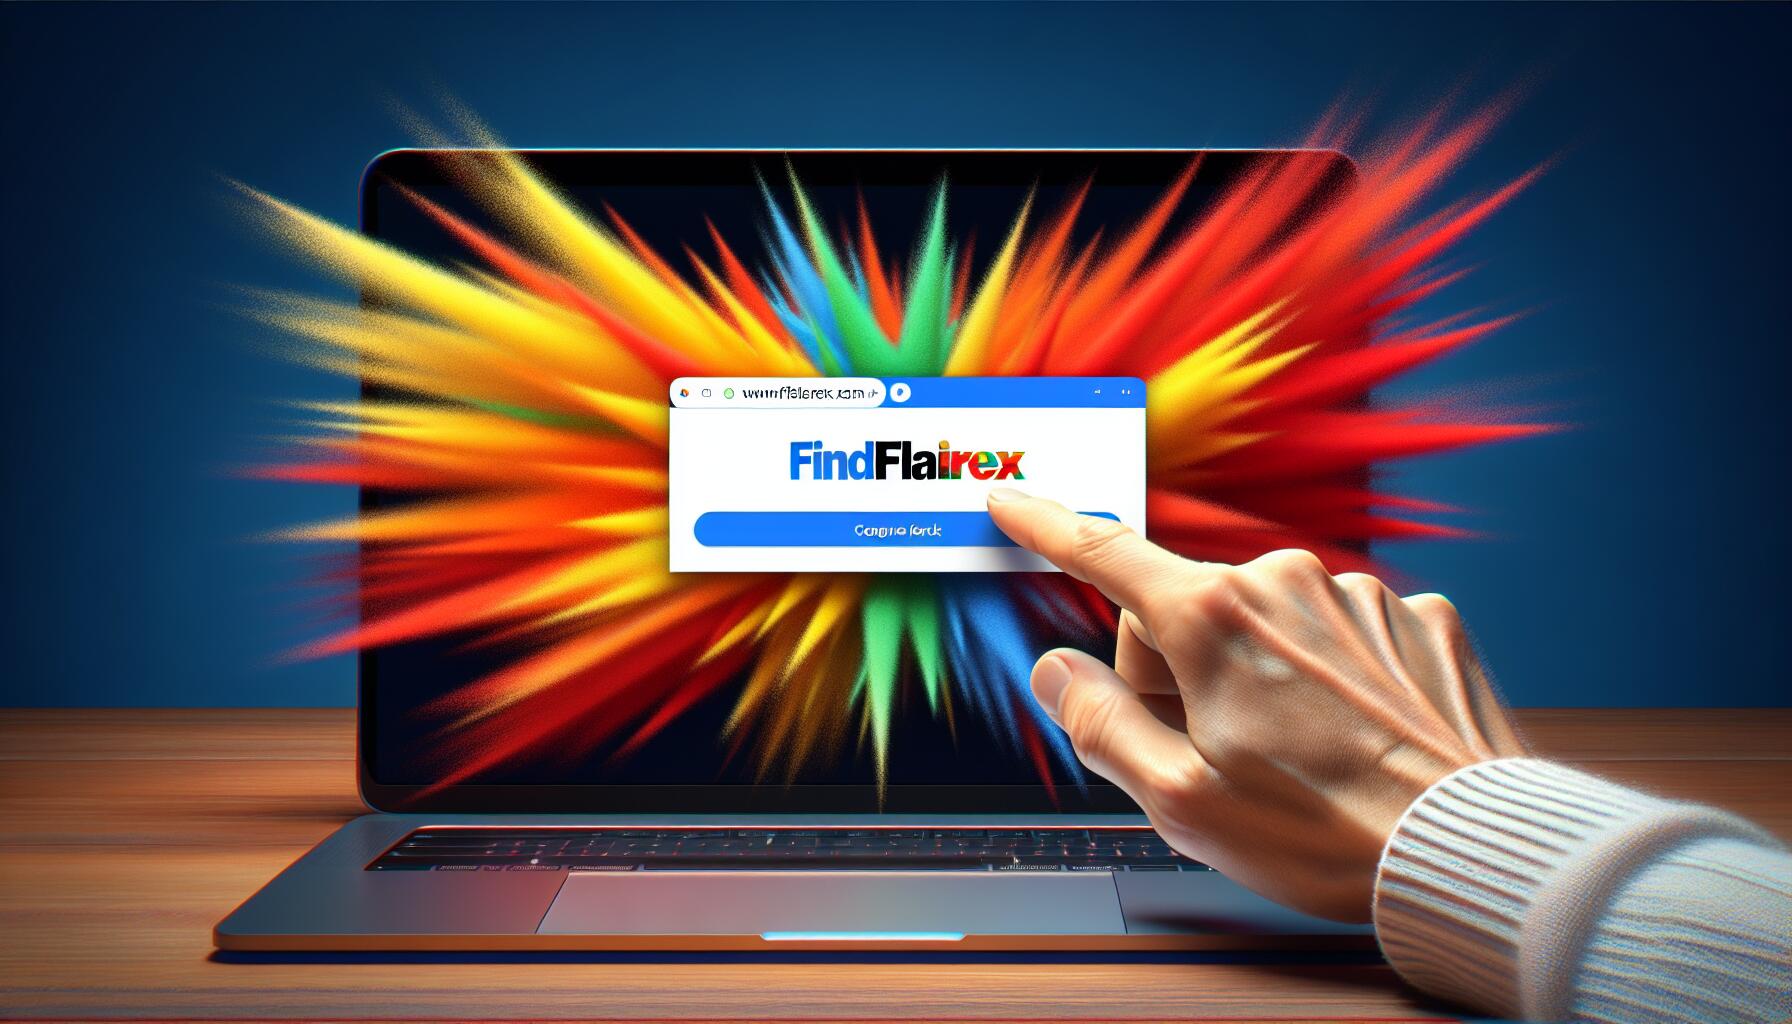 findflarex.com